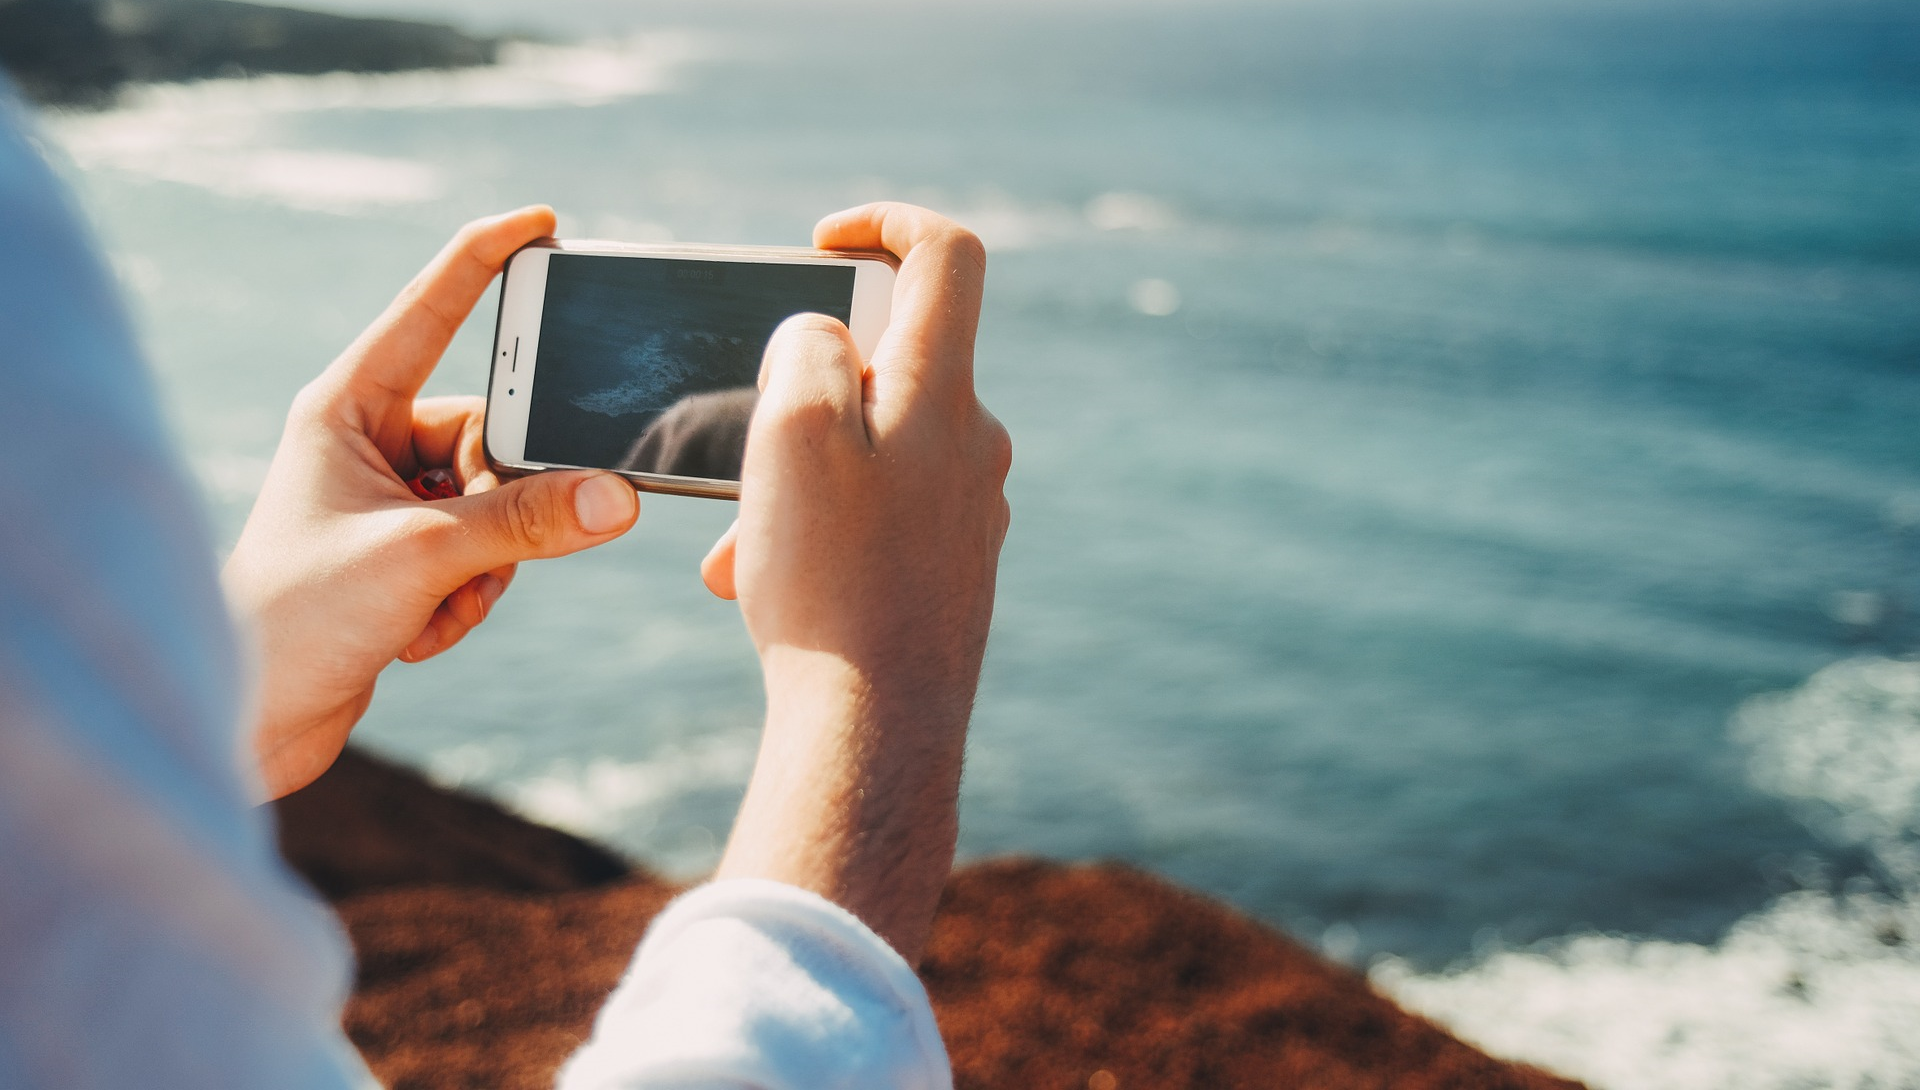 Ihminen ottaa kännykällä kuvan merestä.